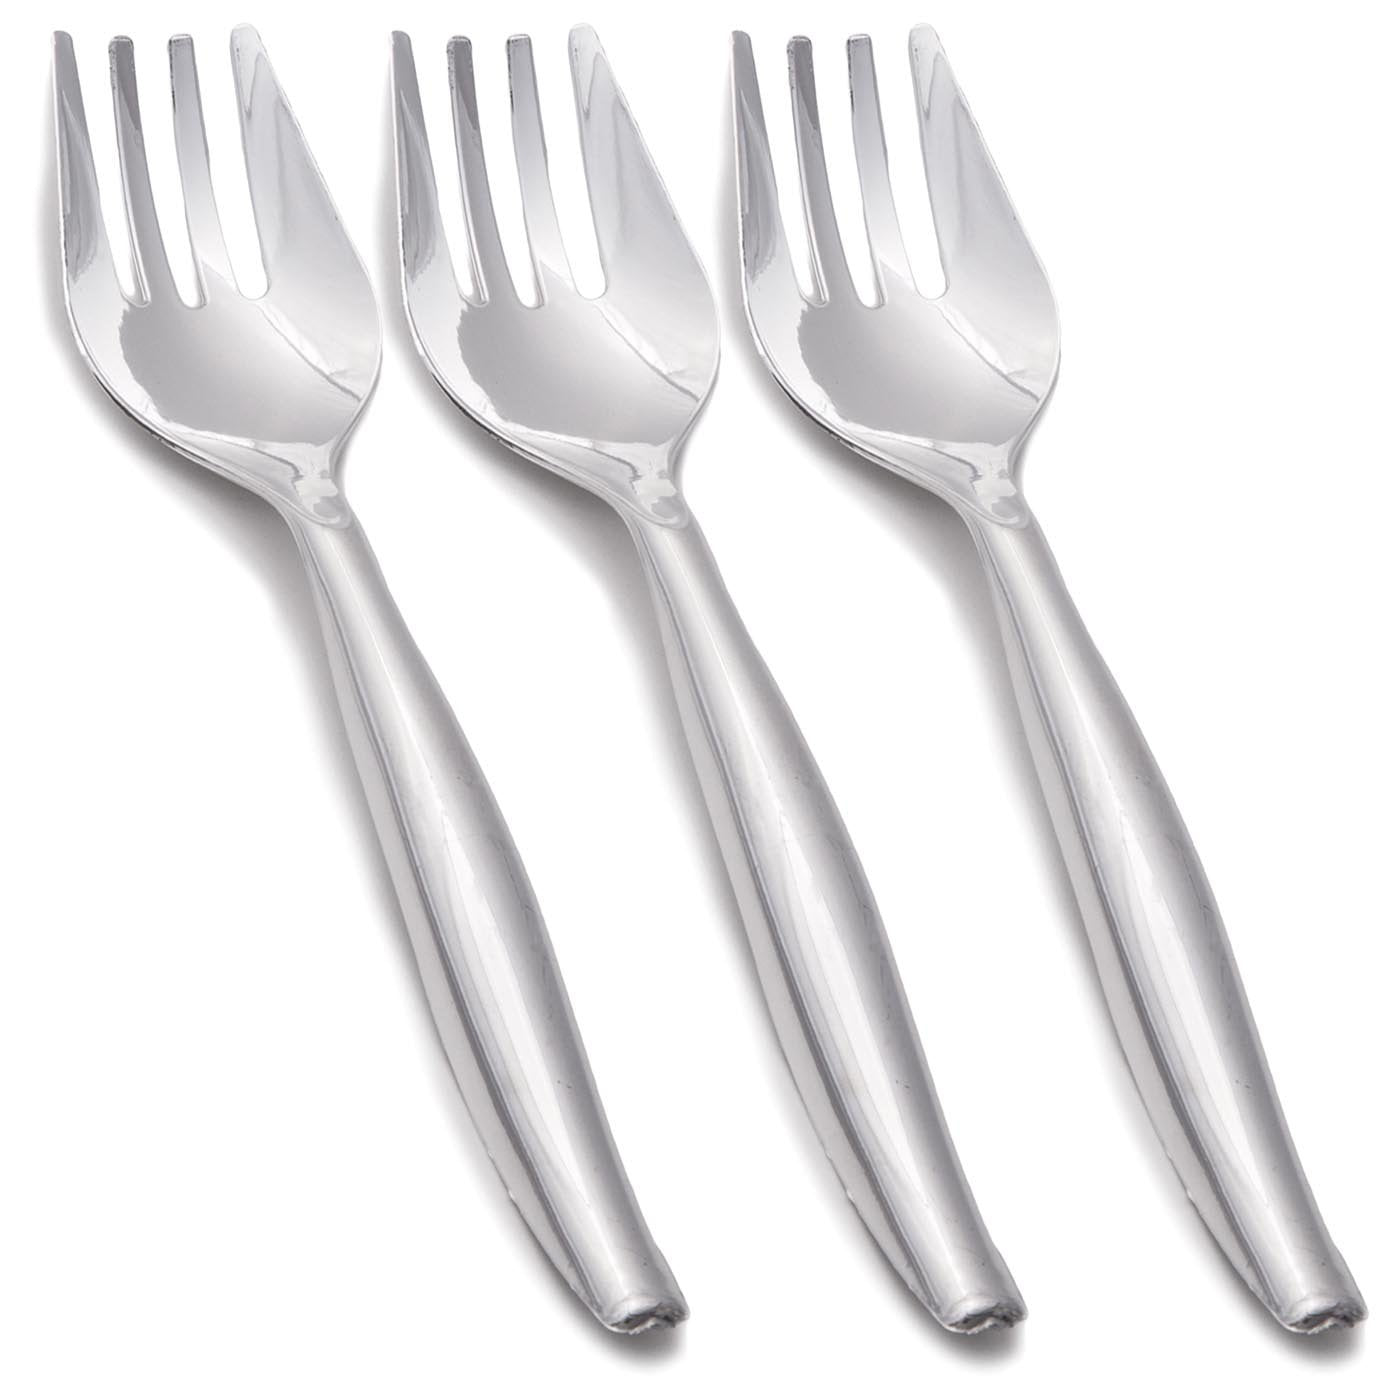 Silver Disposable Plastic Serving Forks (150 Forks)